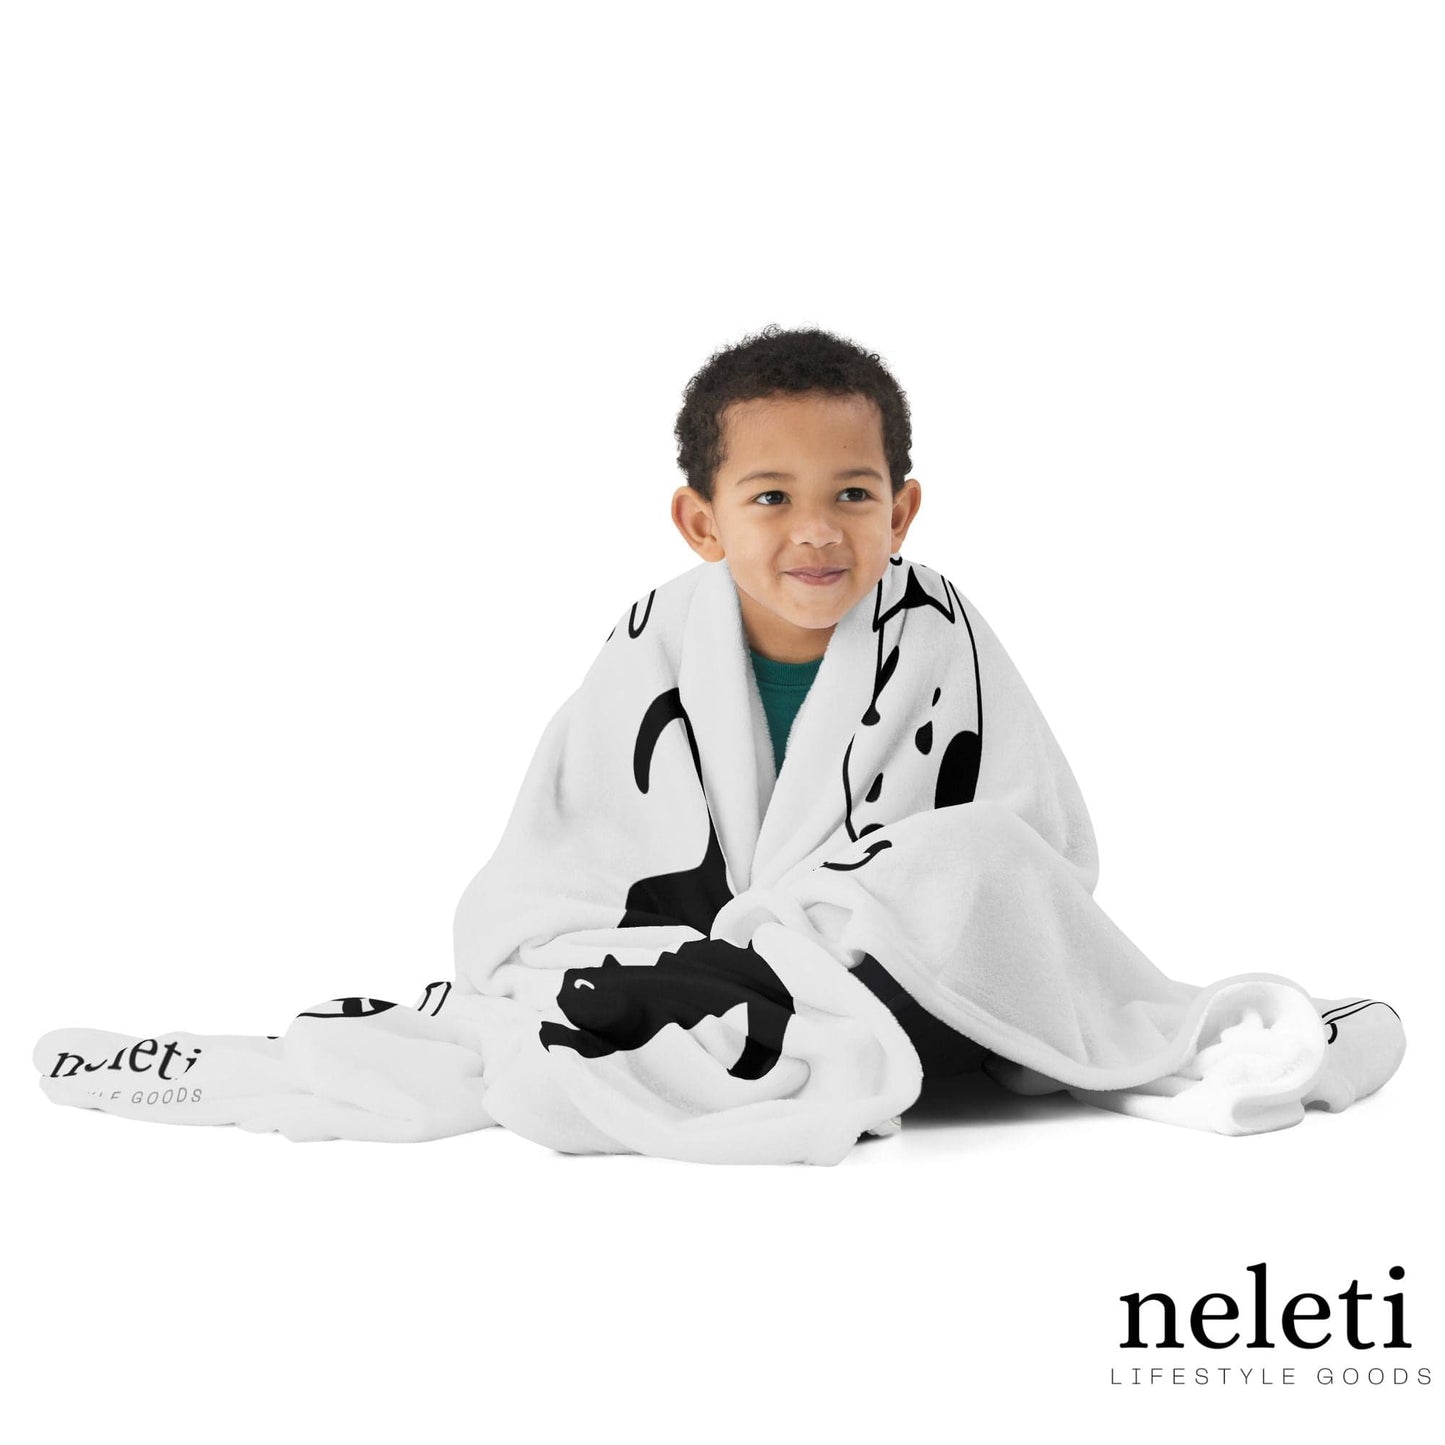    neleti.com-cat-blanket-in-whisper-color